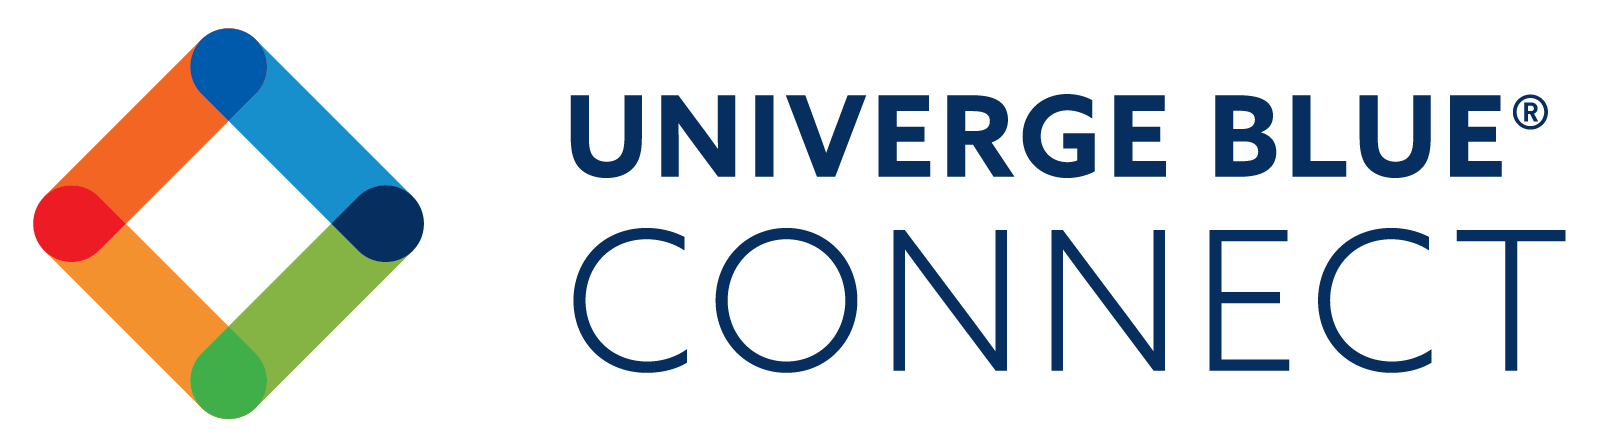 UNIVERGE BLUE® CONNECT